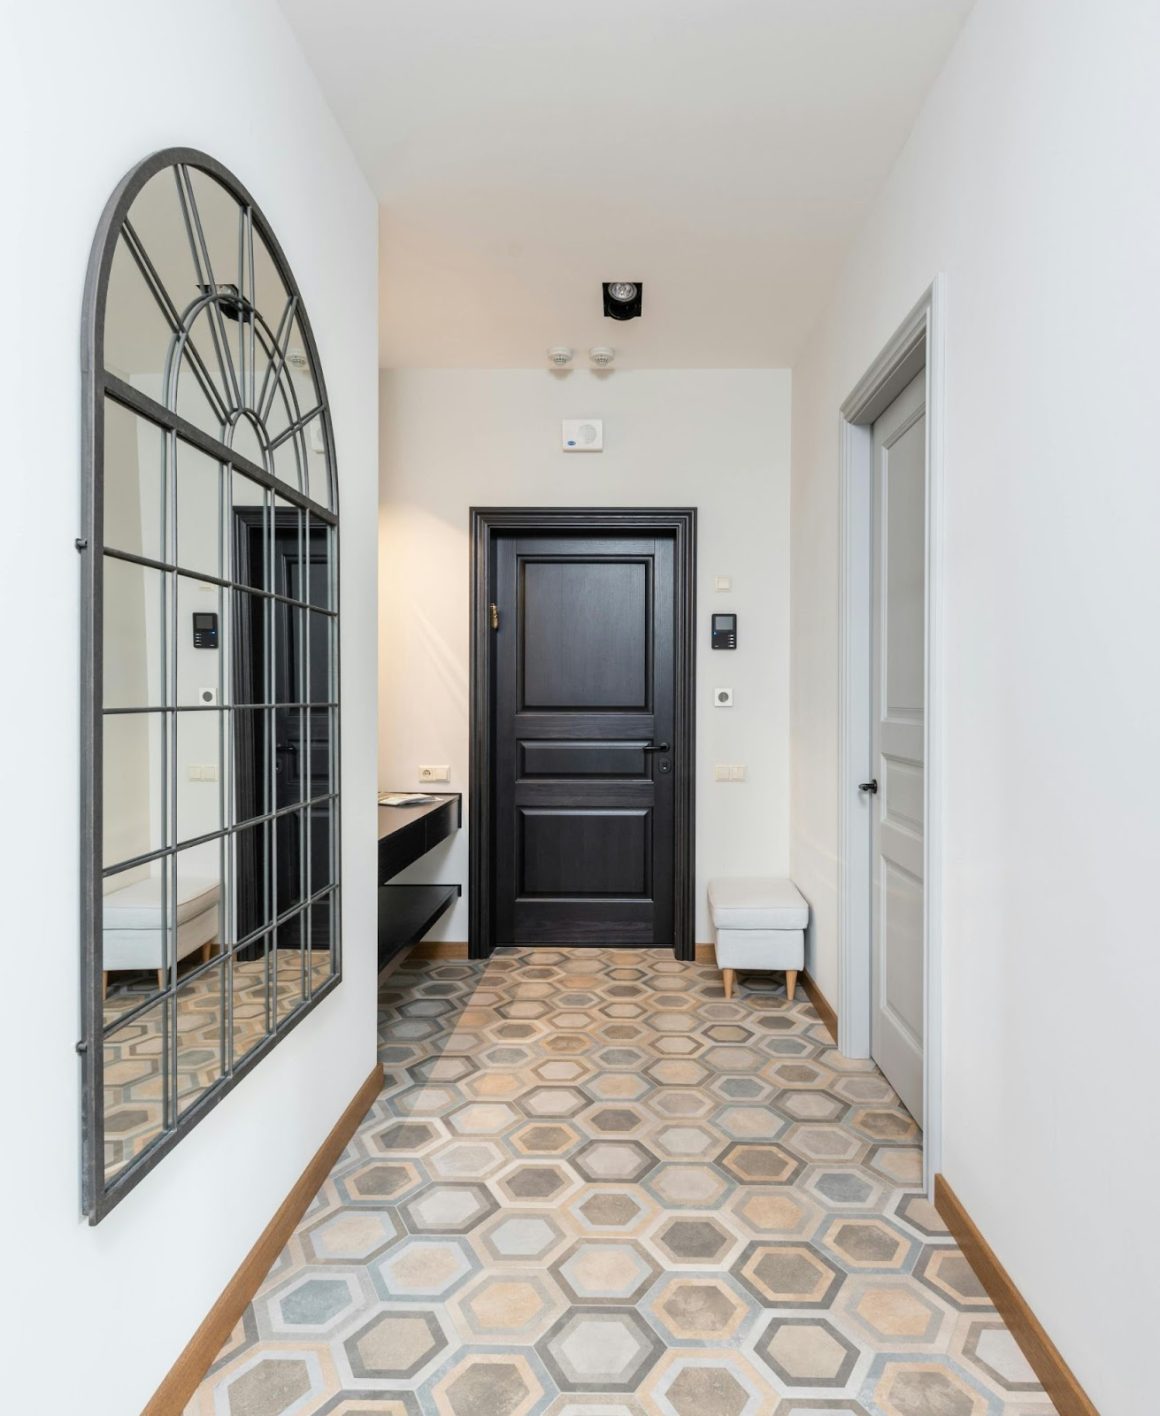 Un couloir carrelé hexagonal avec un motif en noir et blanc et une porte en bois au fond.